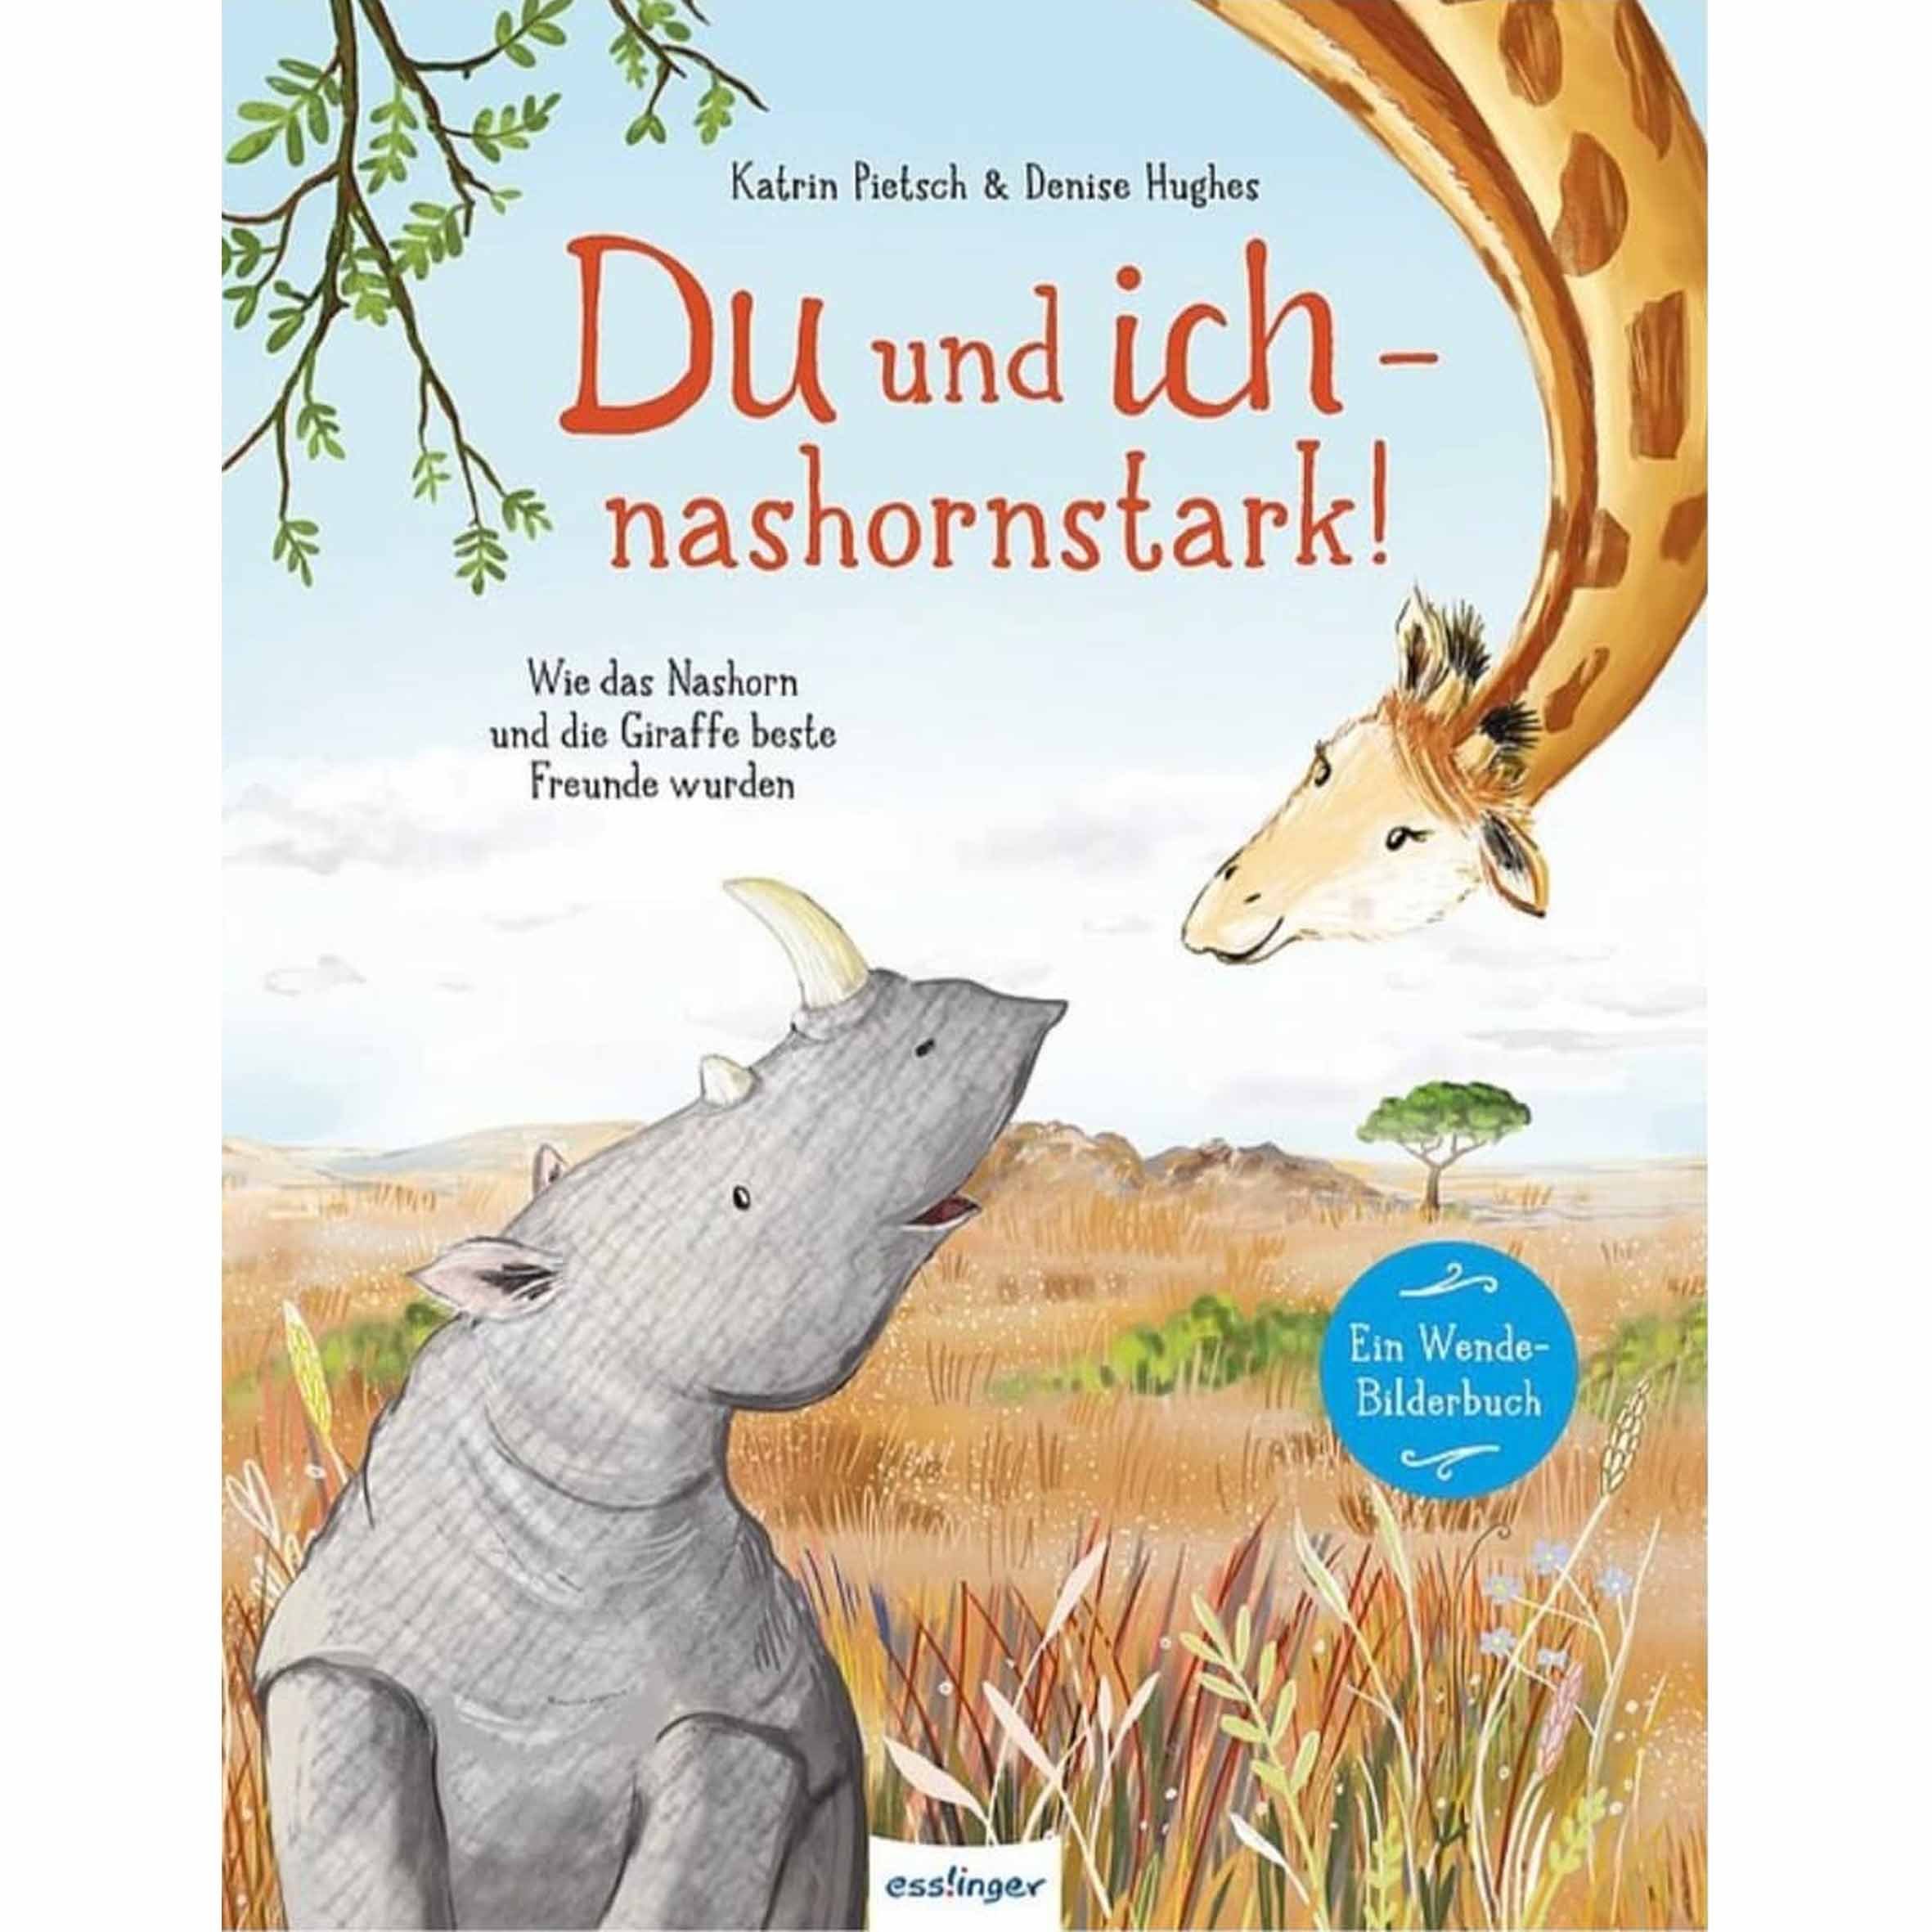 Du und ich - Nashornstark! for Thienemann-Esslinger Verlag